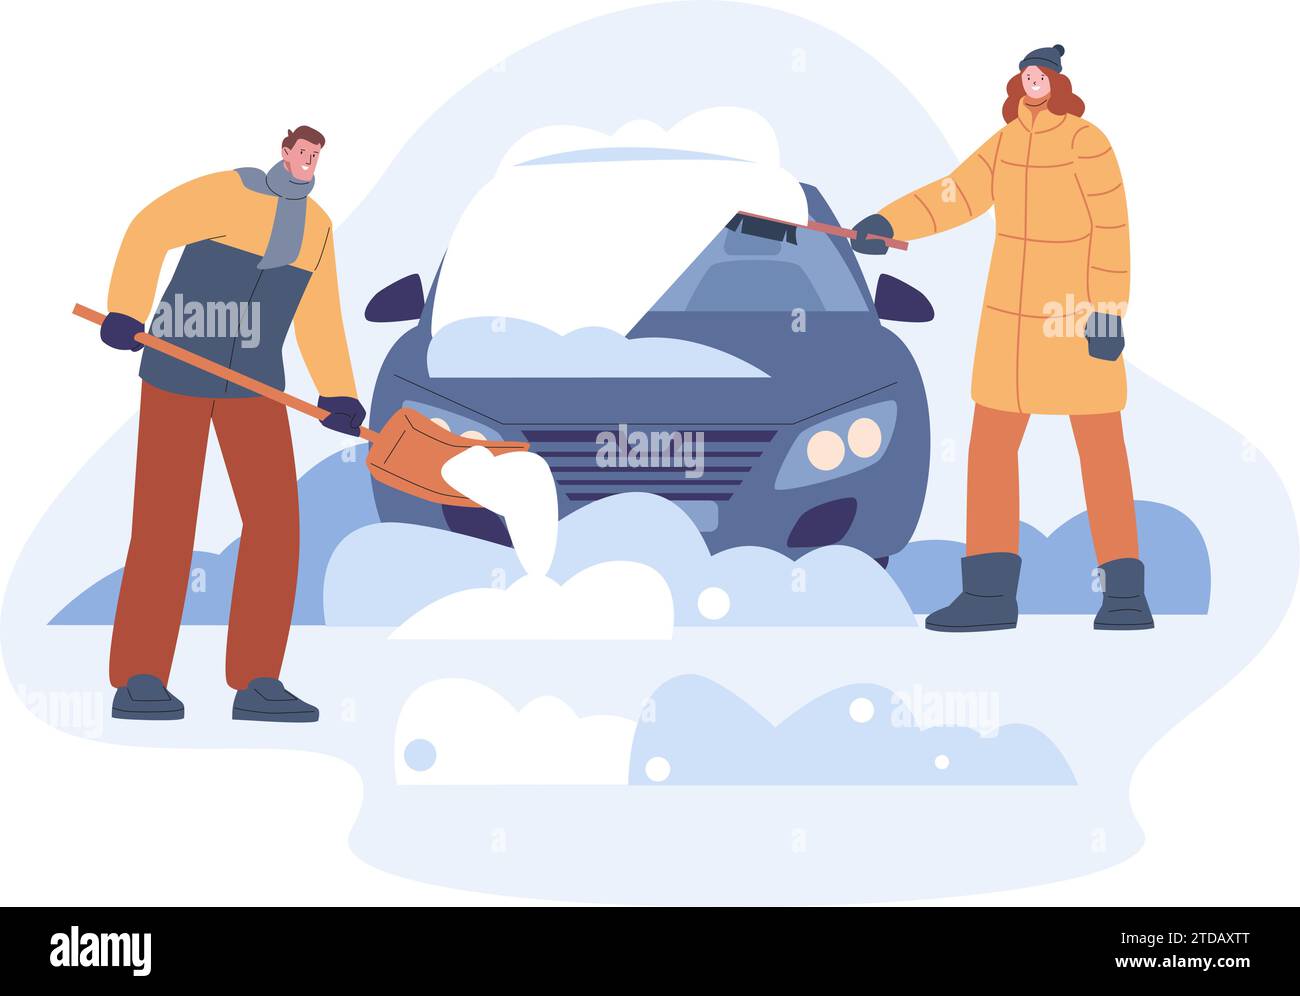 Coche limpio de la nieve después de la tormenta de nieve. Hombre y mujer de limpieza de automóviles, quitó la deriva de nieve estacional con cepillo y pala. Escena vectorial kicky de invierno Ilustración del Vector